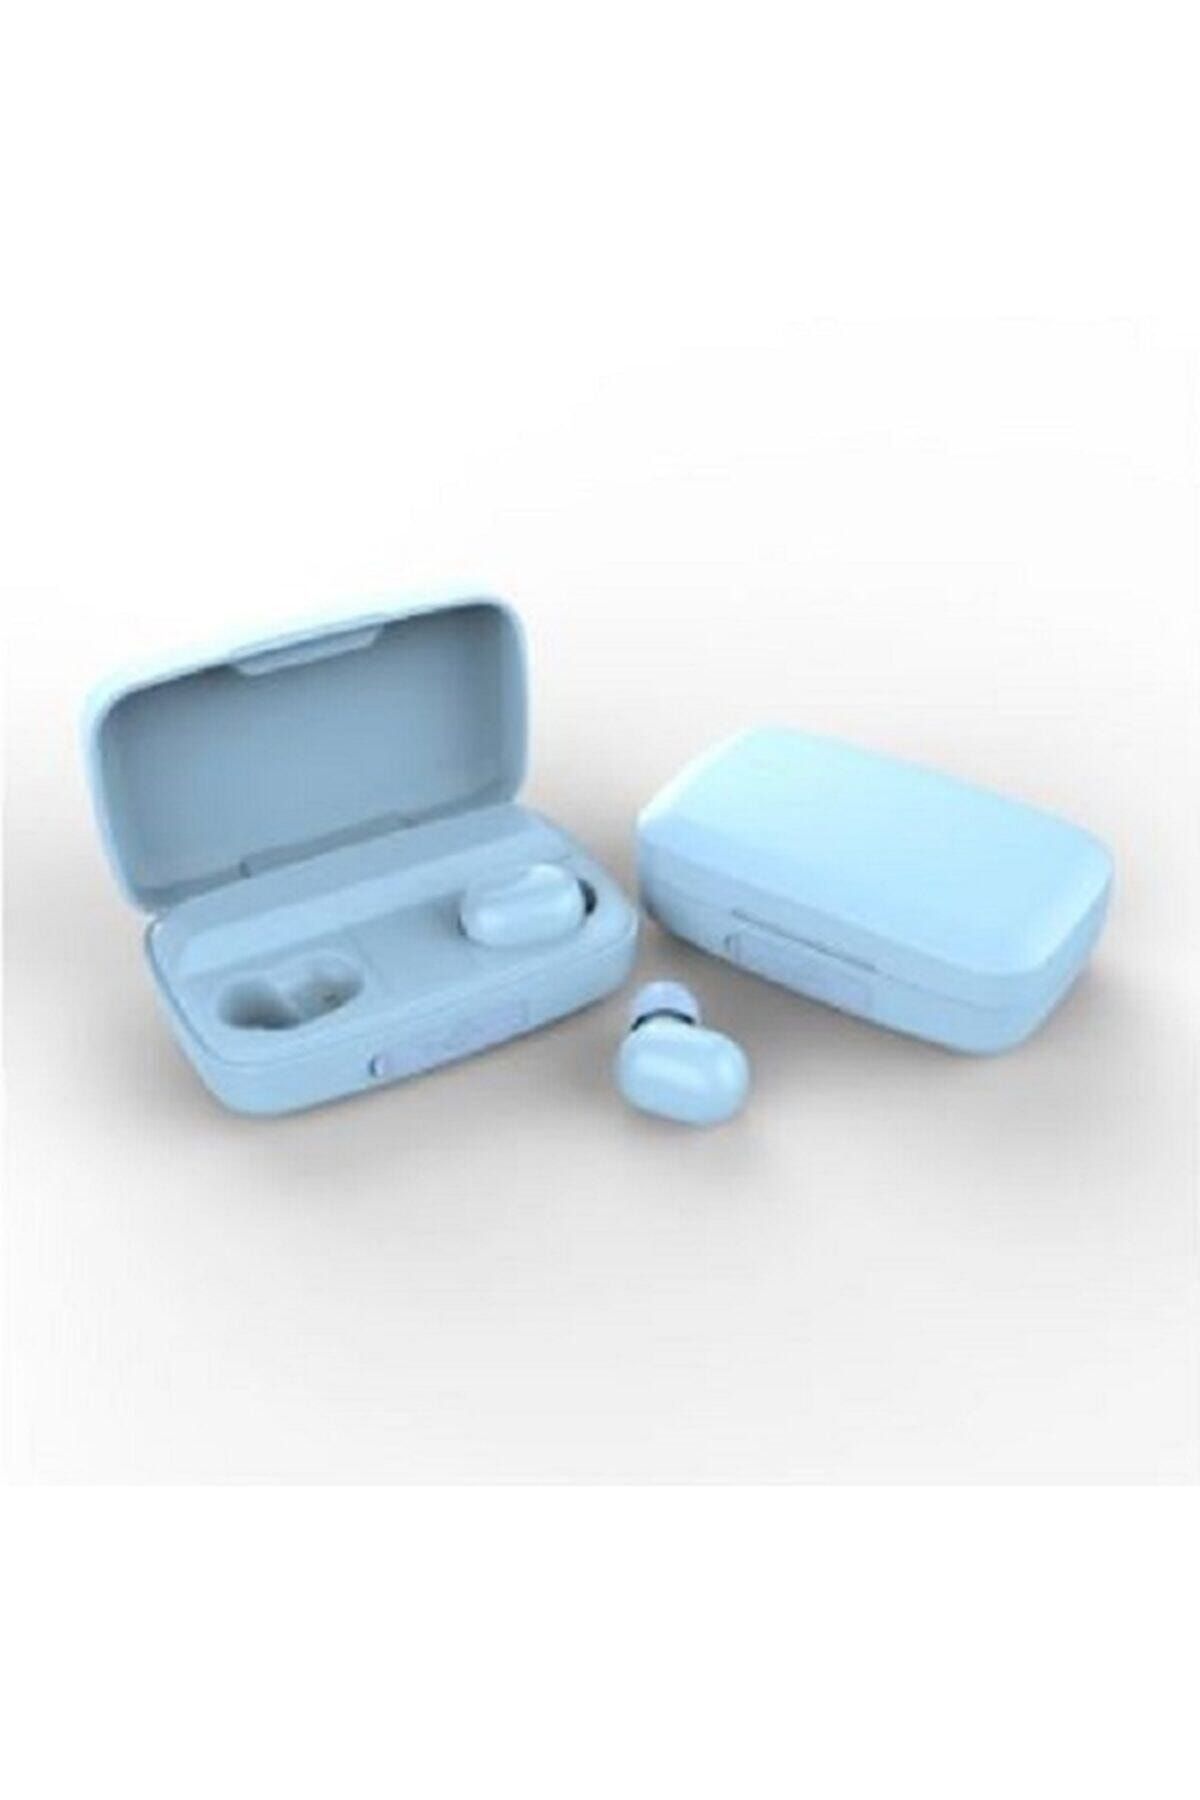 Earbuds Bluetooth Spor Kulaklık, Led Göstergeli, 1800 Mah Powerbank, Su Geçirmez Tws A10s - Mavi